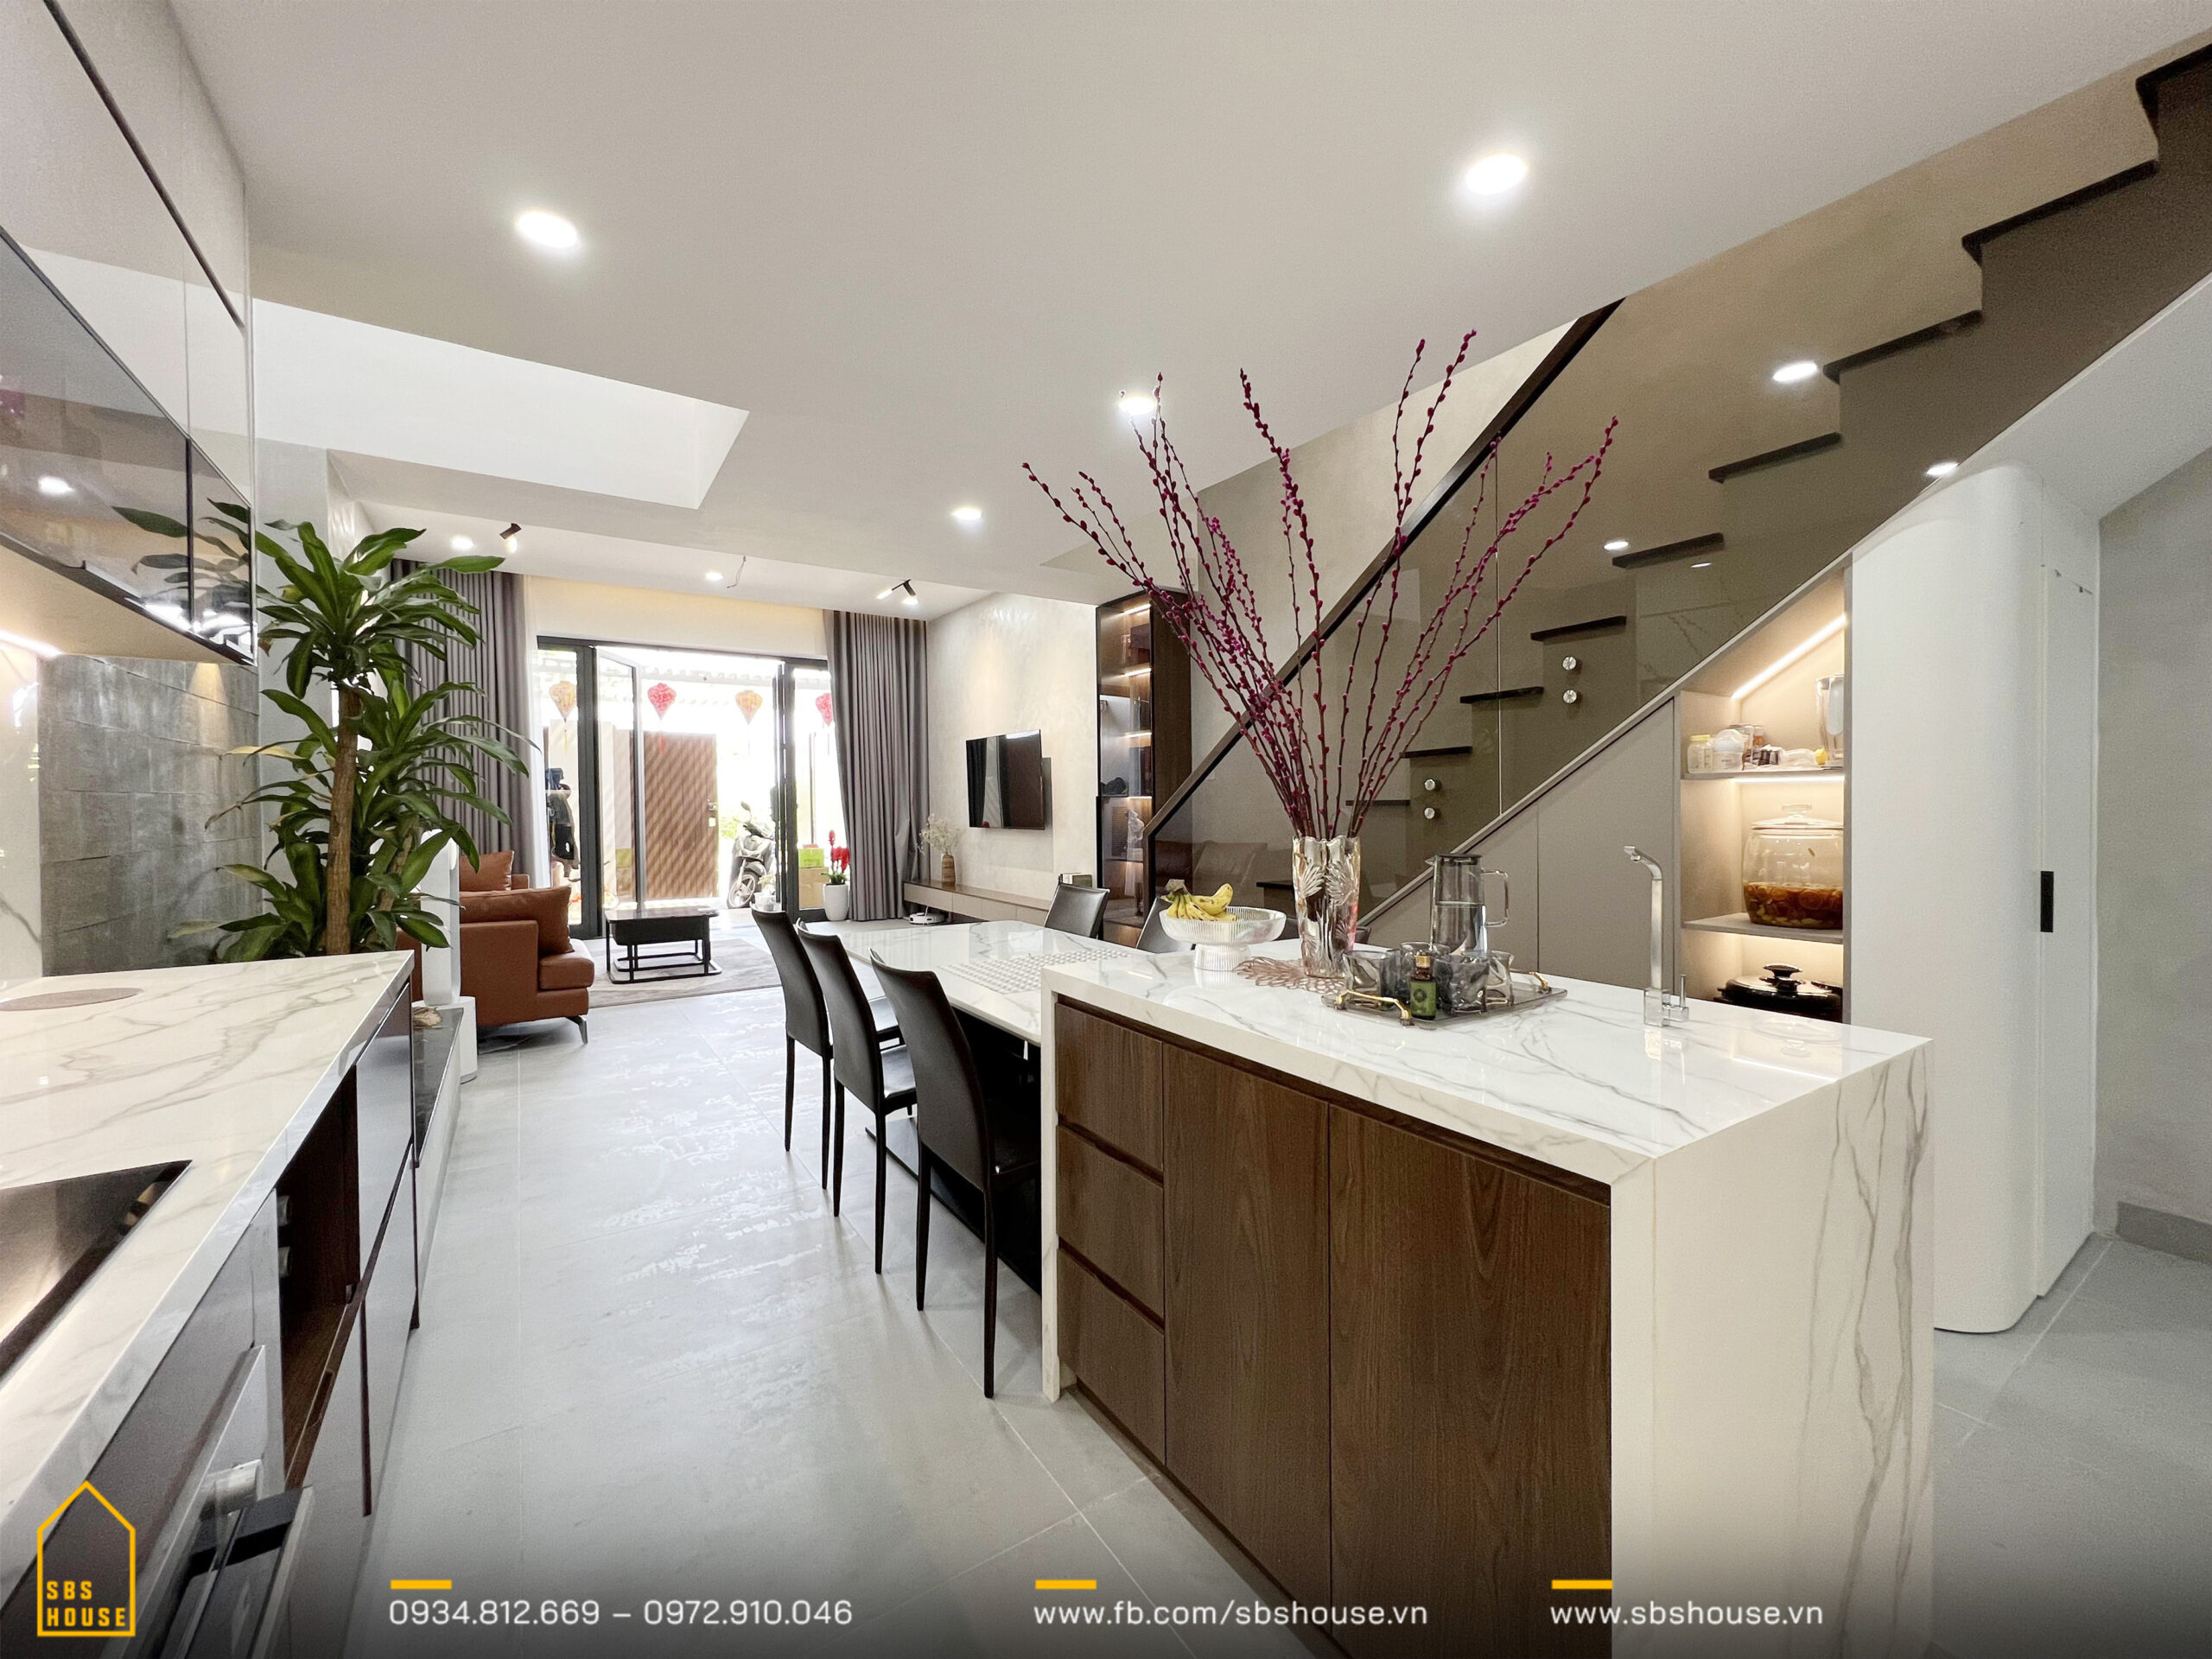 Đ's house - Sự liên kết giữa phòng bếp và phòng khách giúp không gian khu vực này thêm phần thông thoáng, thuận tiện cho sự di chuyển. 